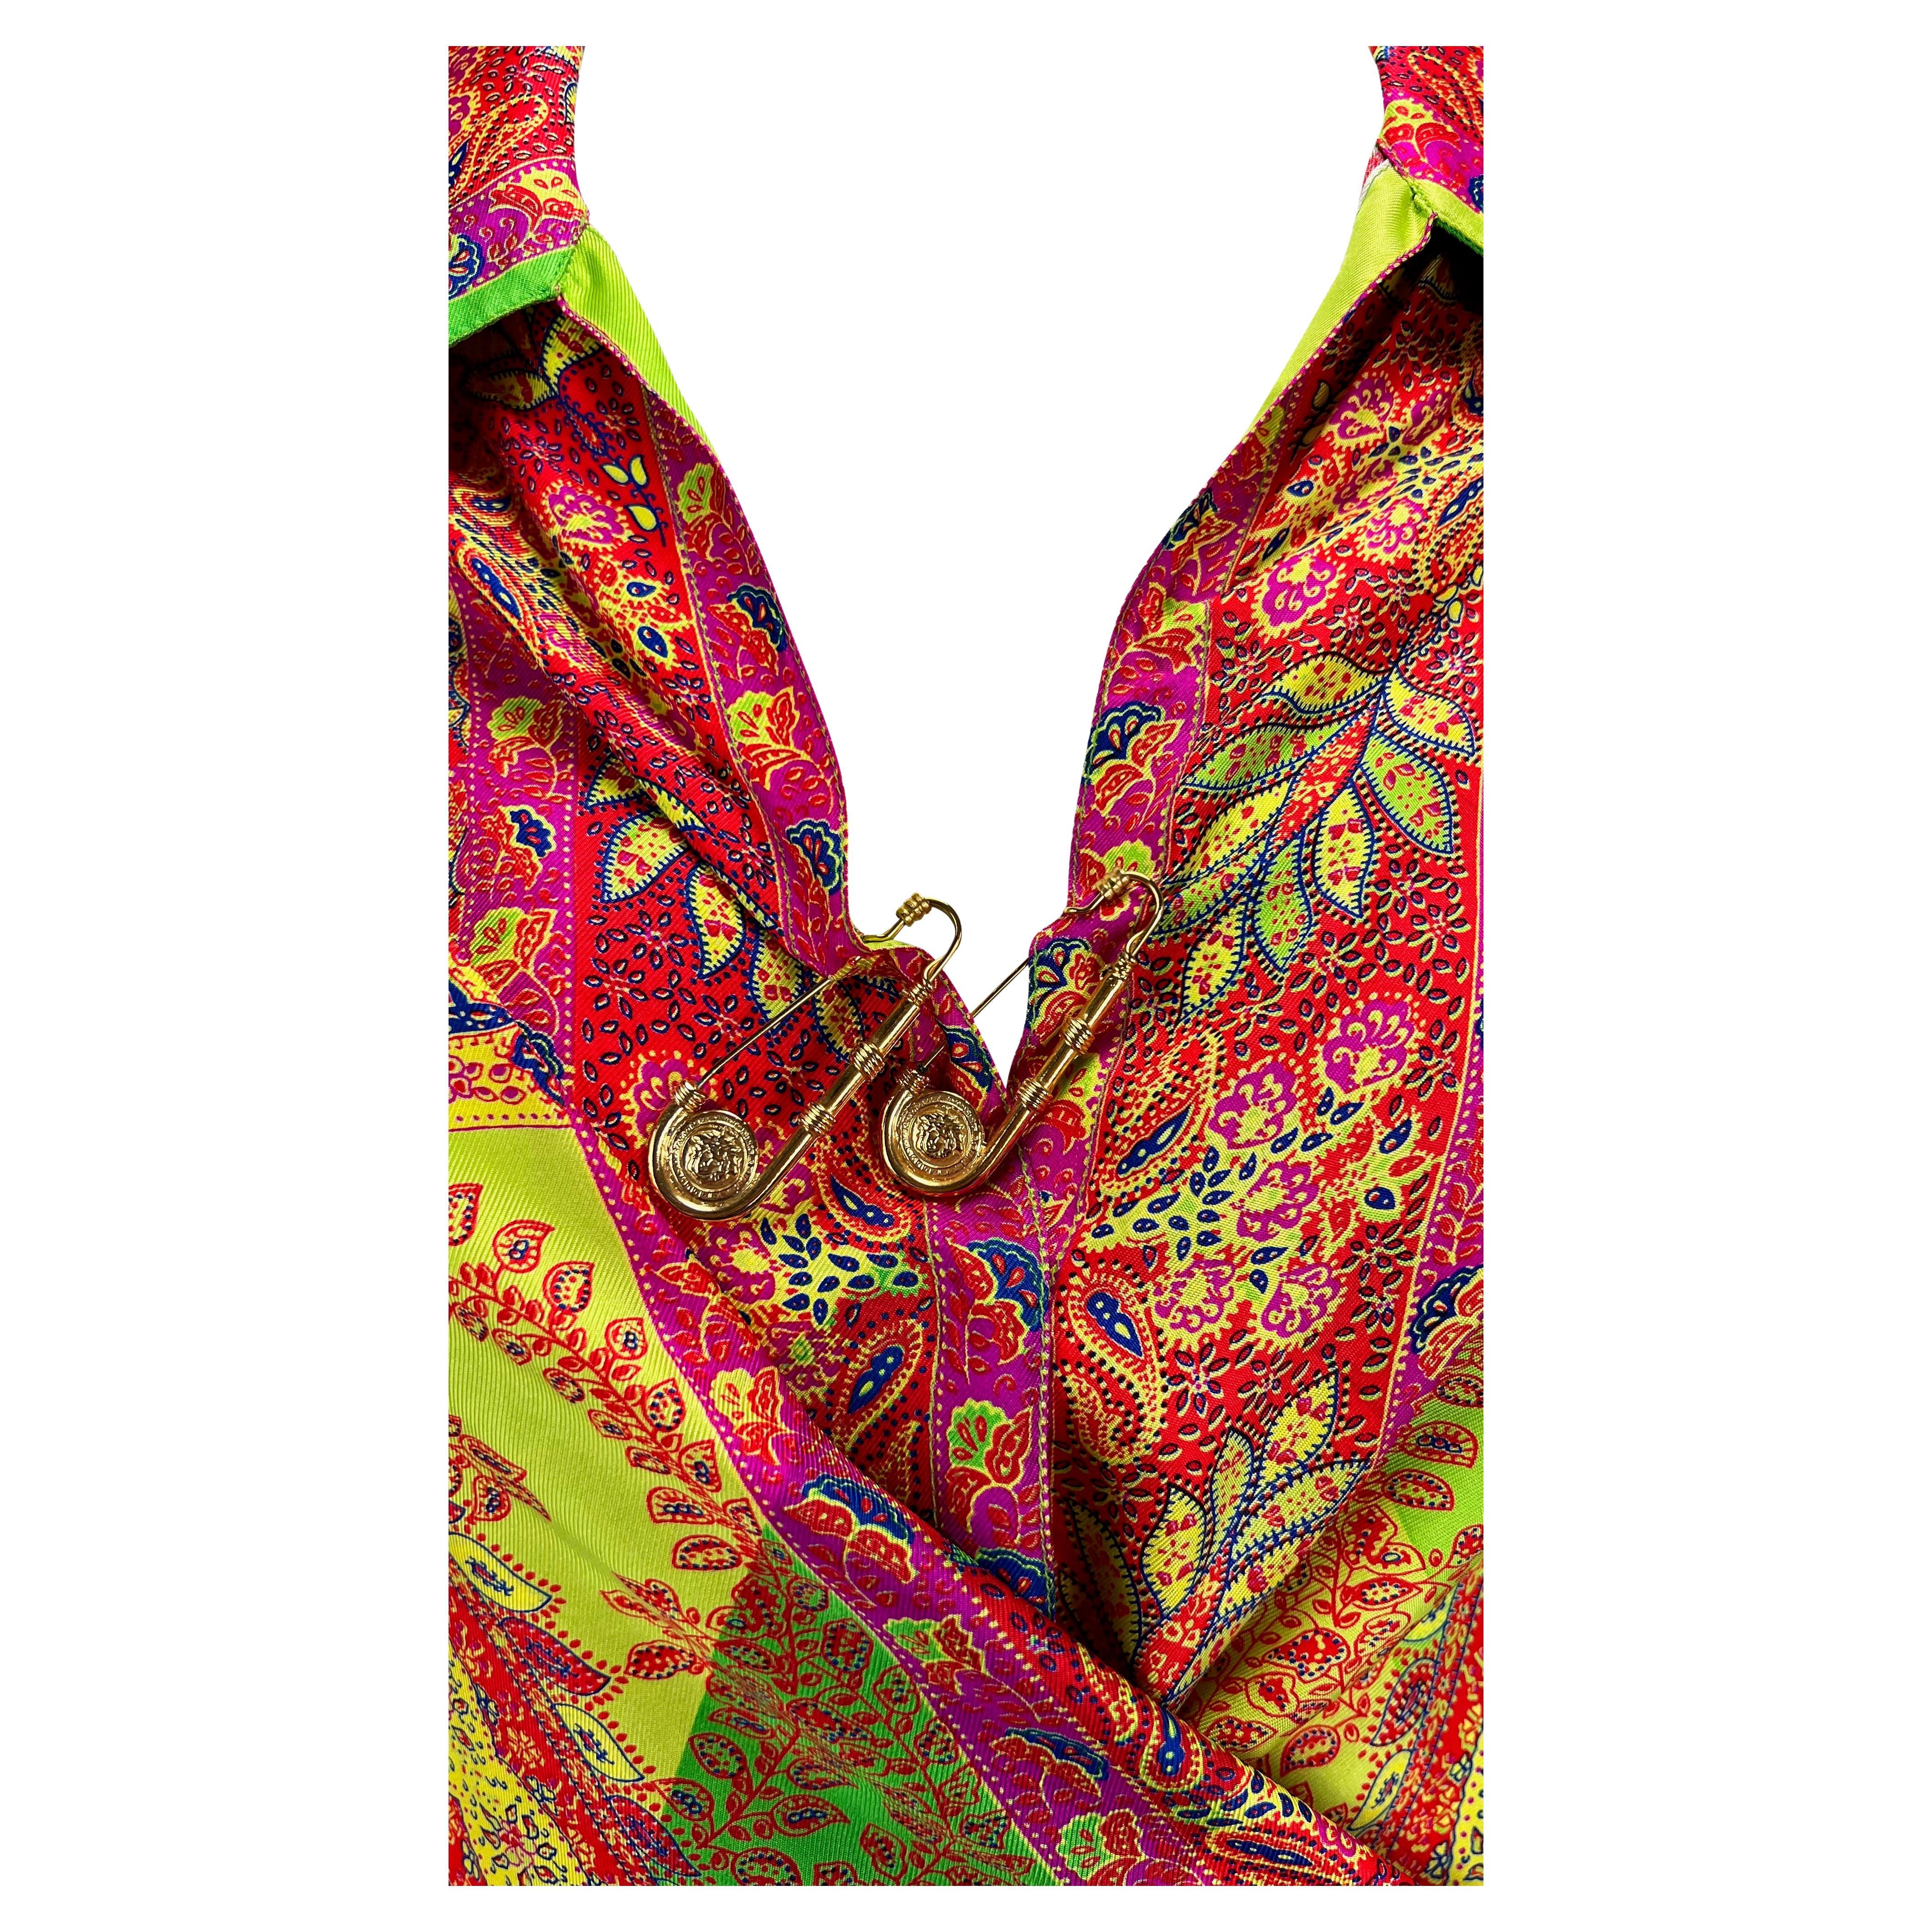 Wir präsentieren ein wunderschönes, von Gianni Versace entworfenes Hemd mit Sicherheitsnadel und Kragen, das von der Bohème inspiriert ist. Dieses unglaublich lebendige Hemd aus der Frühjahr/Sommer-Kollektion 1994 zeichnet sich durch ein florales